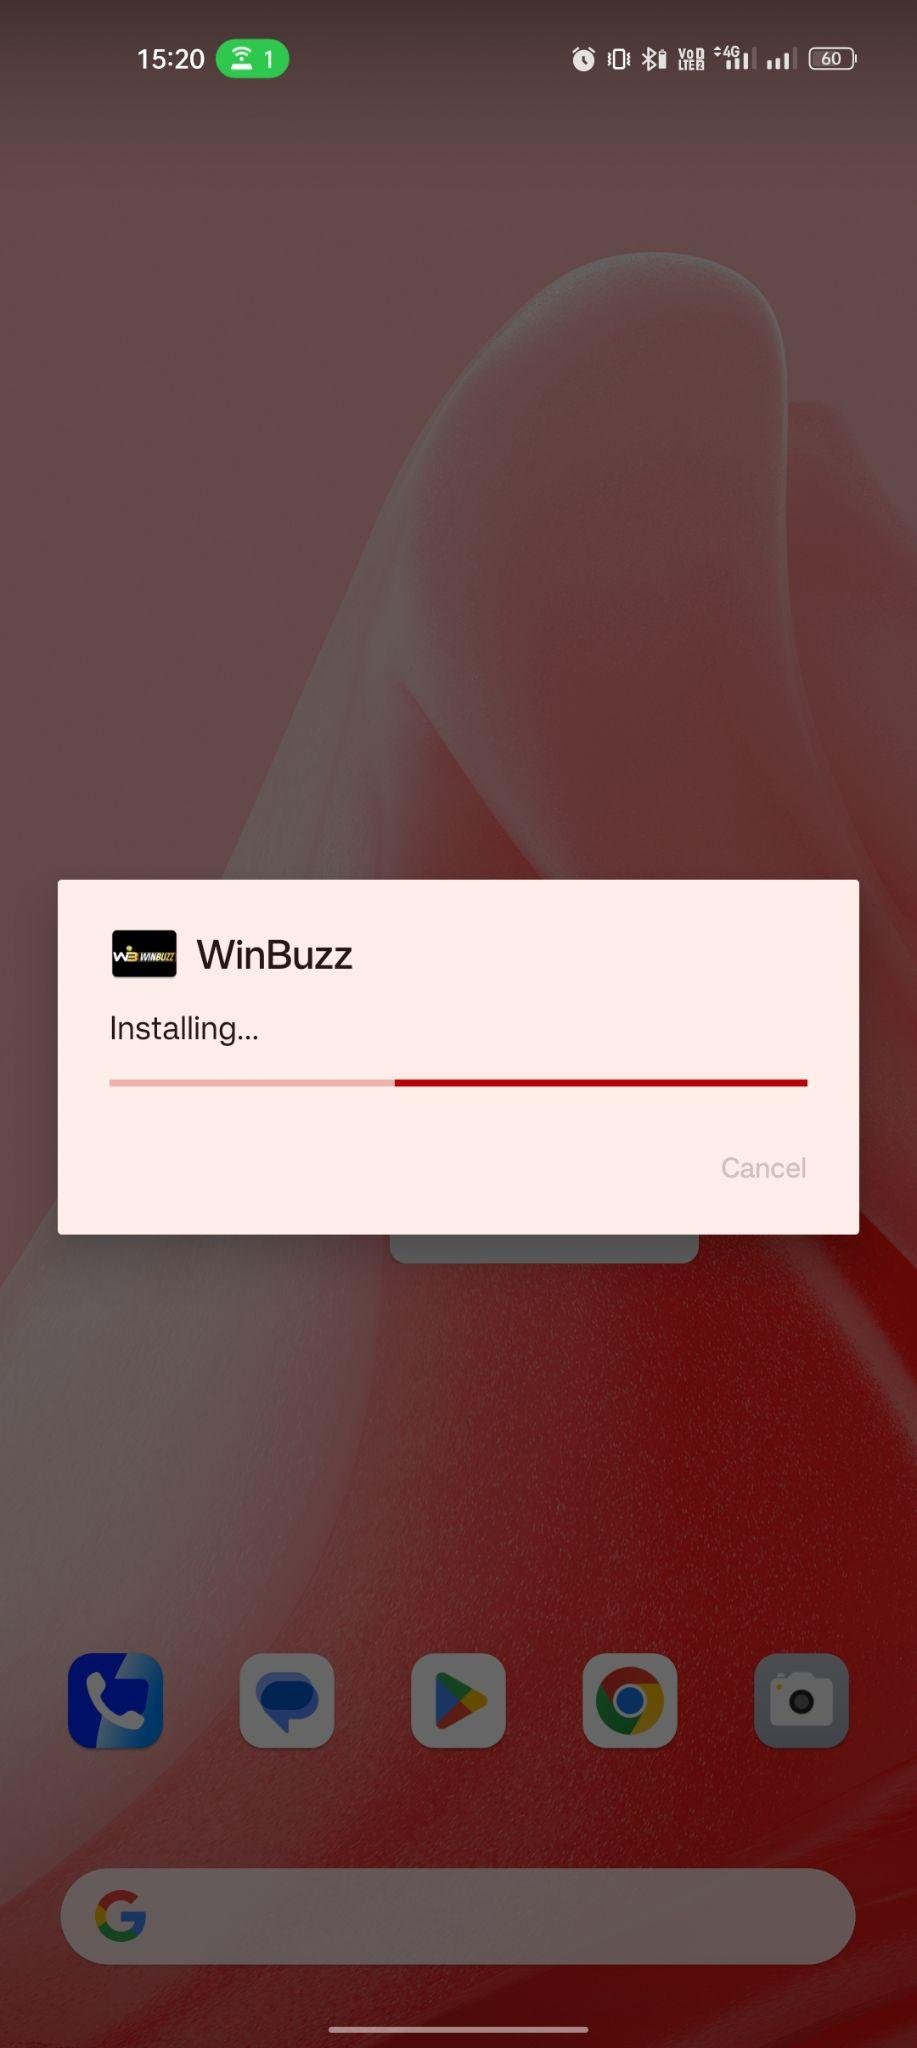 WinBuzz apk installing